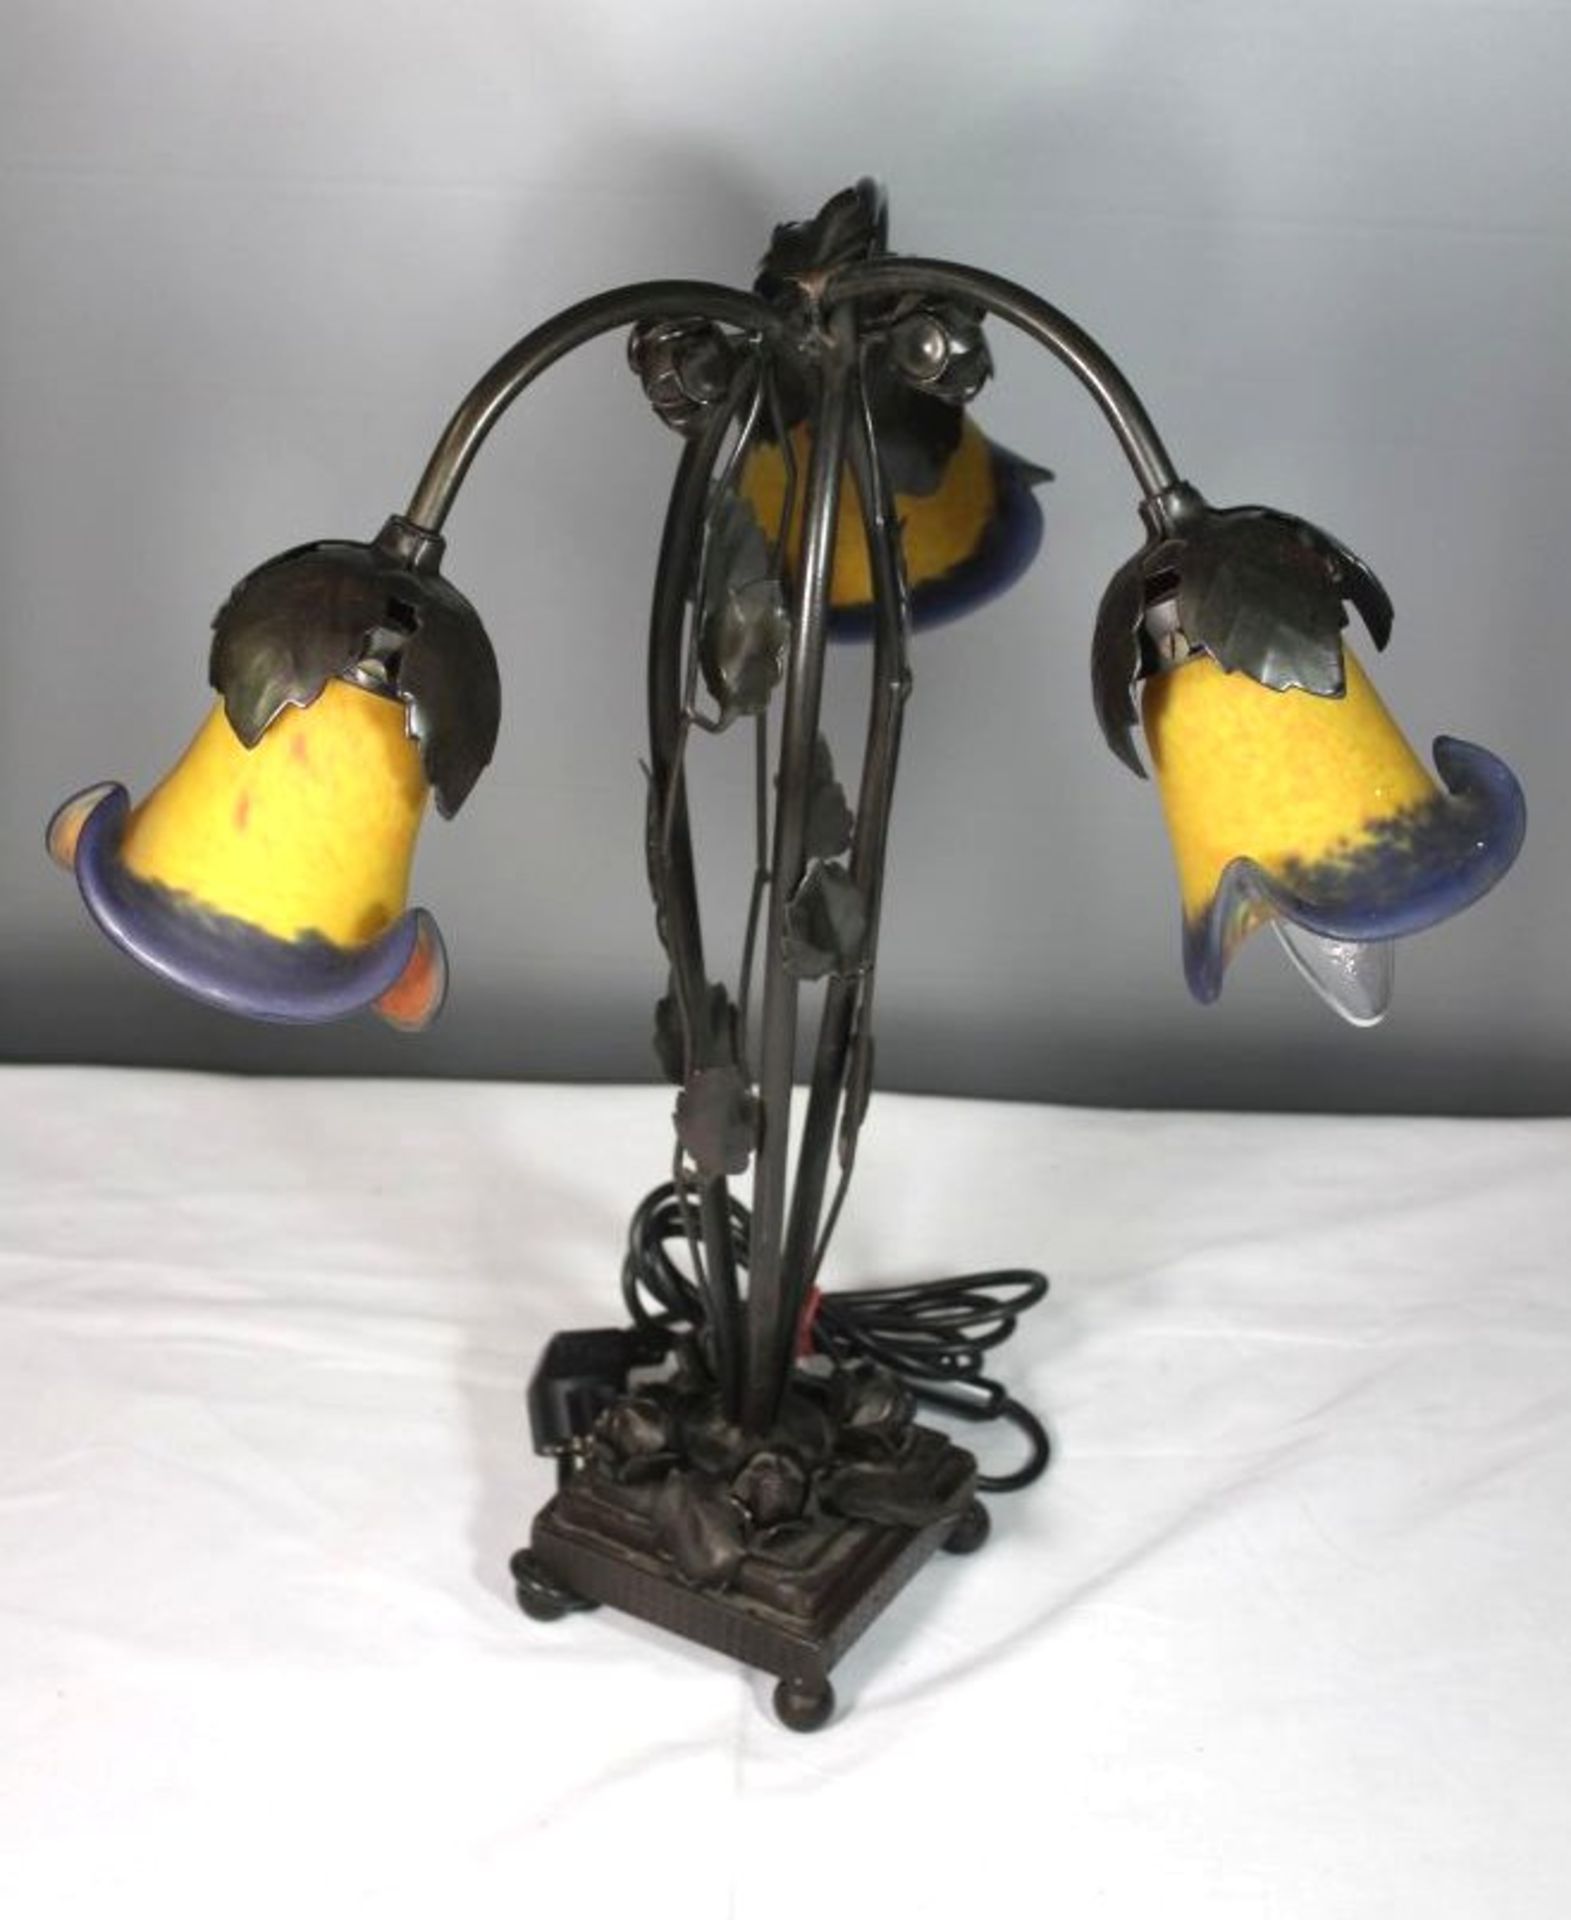 3flammige Tischlampe im Jugendstil, 20. Jhd., Kunstglasschirme, bronzierter Metallstand, H-47cm. - Bild 2 aus 5